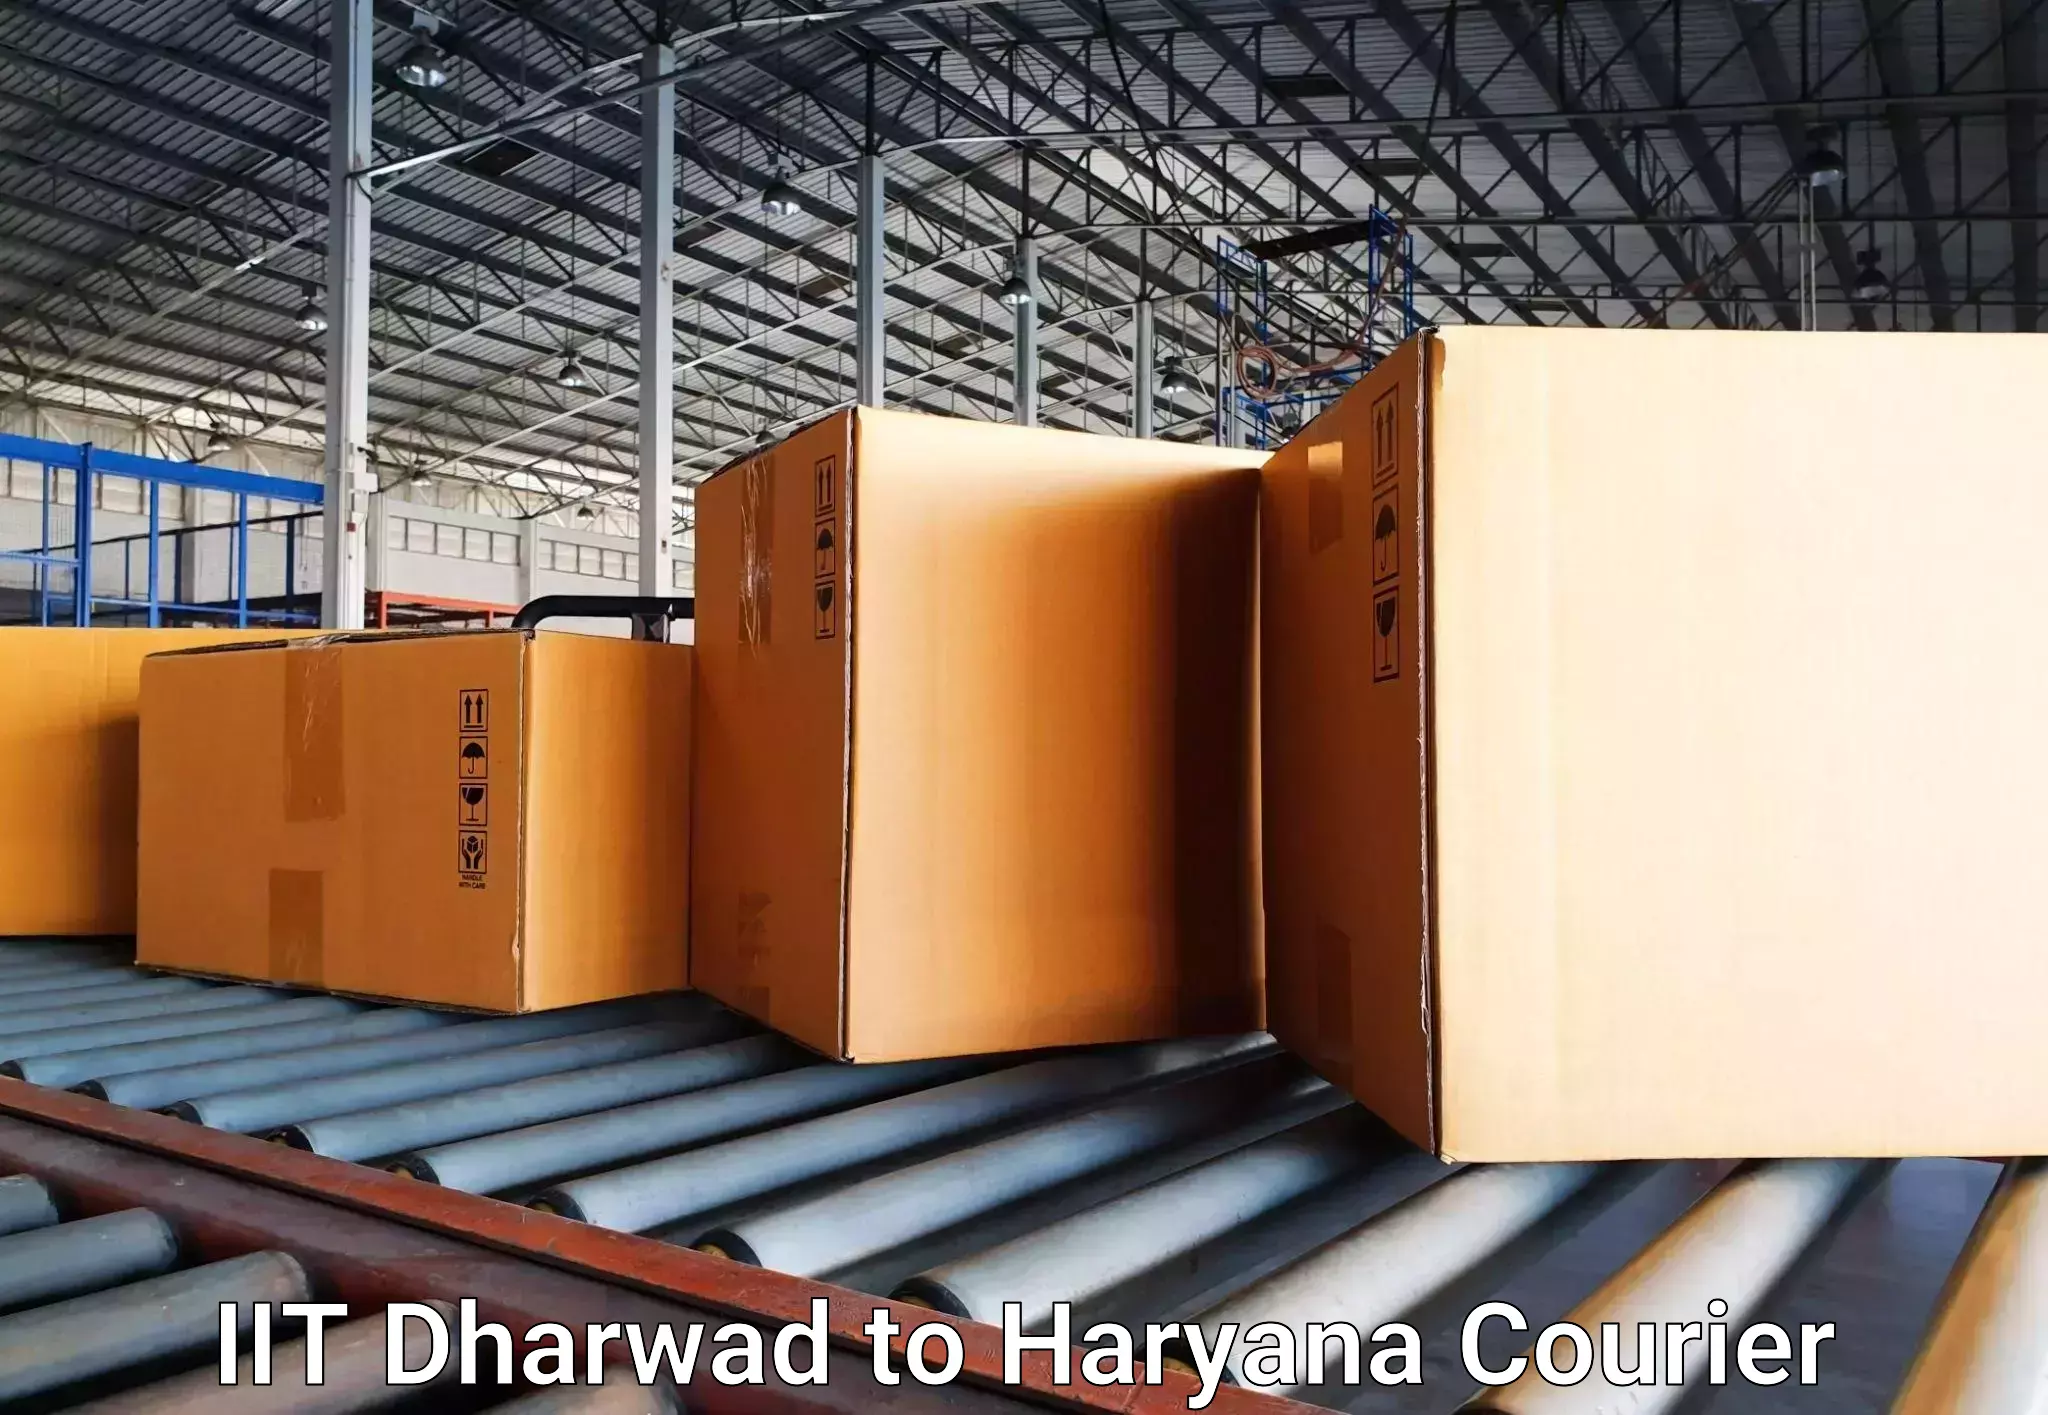 Luggage transport company IIT Dharwad to Bahadurgarh